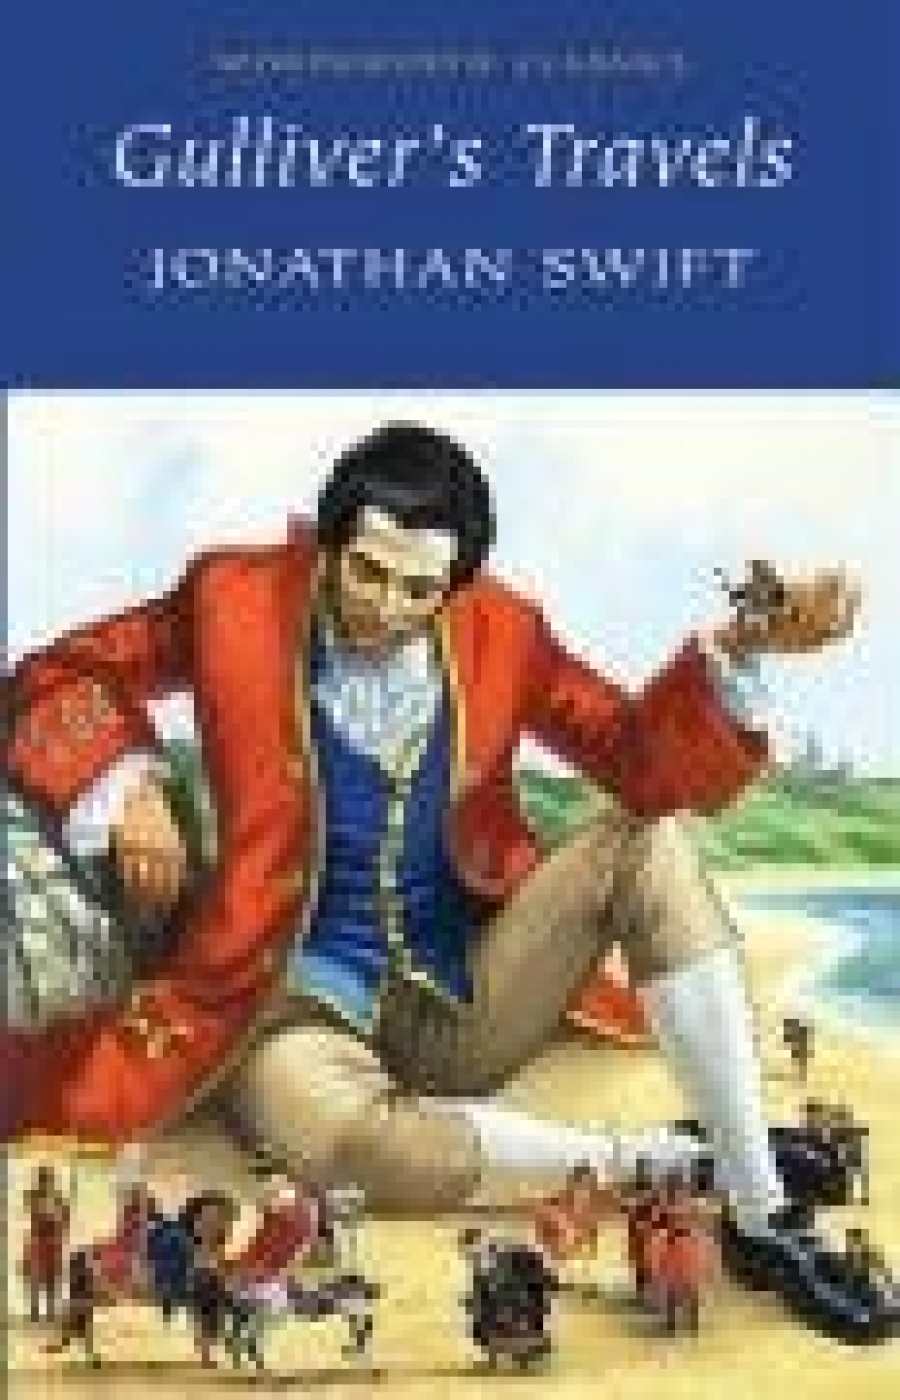 Swift J. Gulliver's Travels 